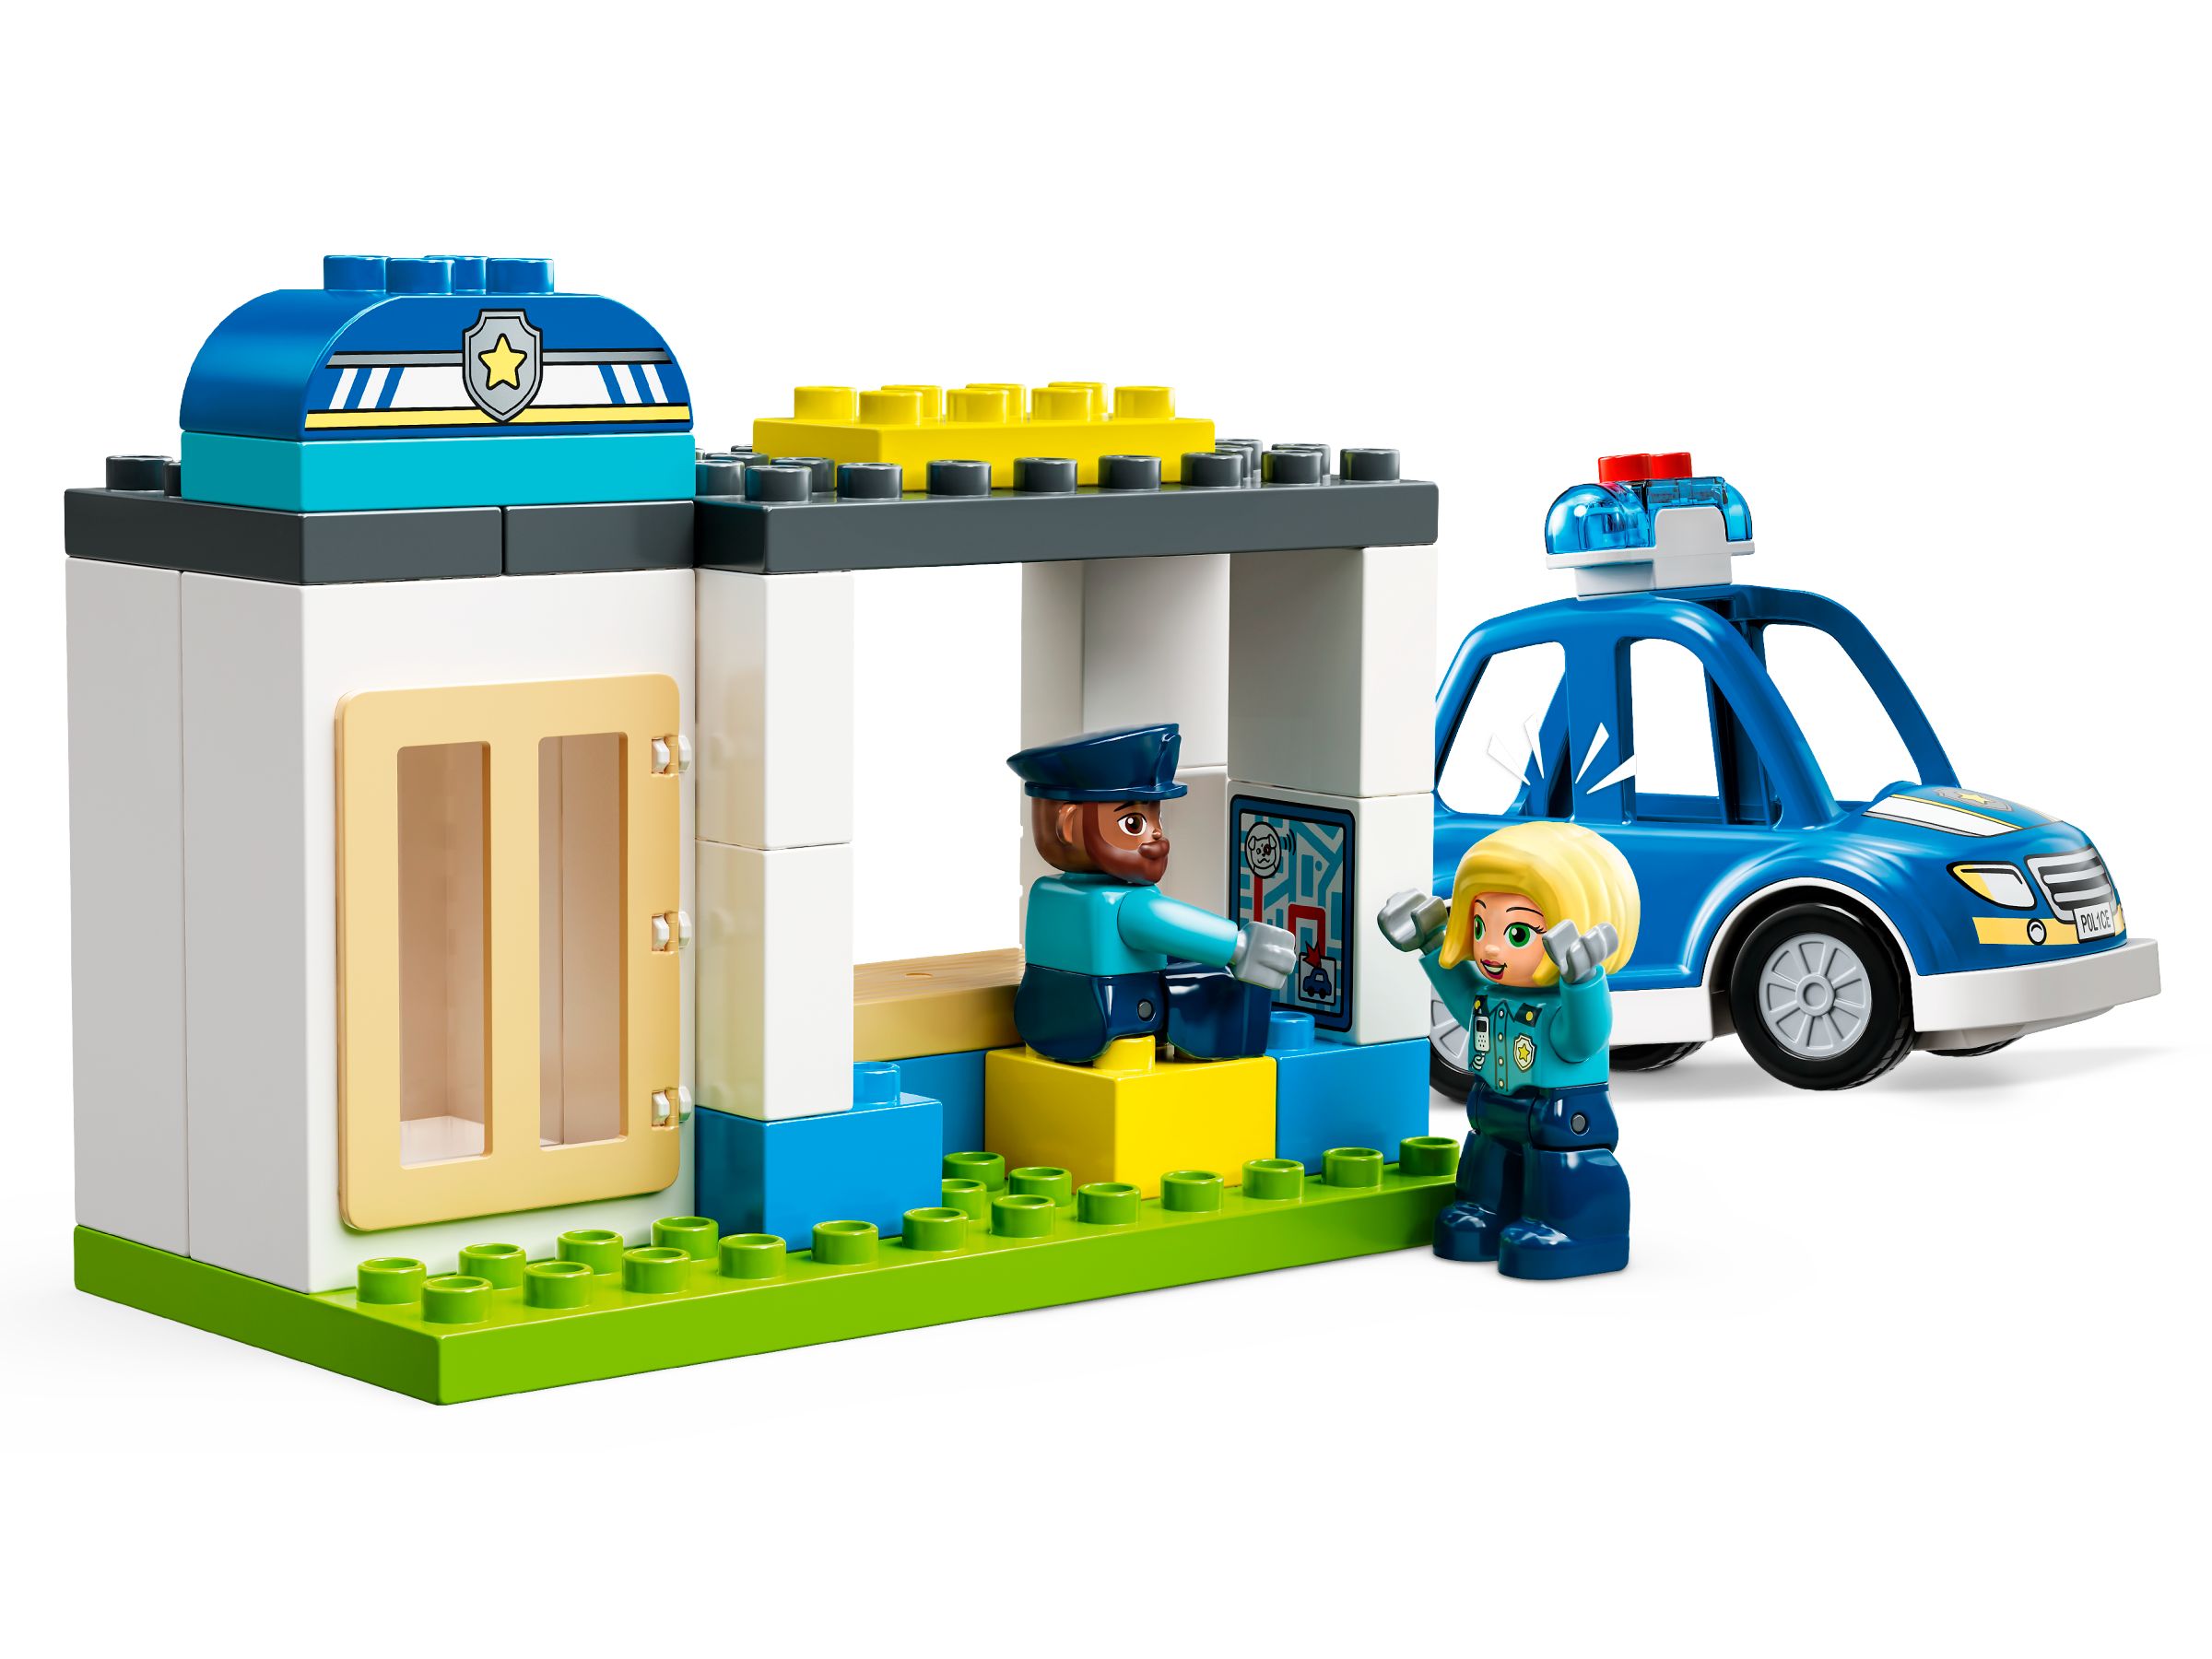 LEGO Duplo 10959 Polizeistation mit Hubschrauber LEGO_10959_alt3.jpg